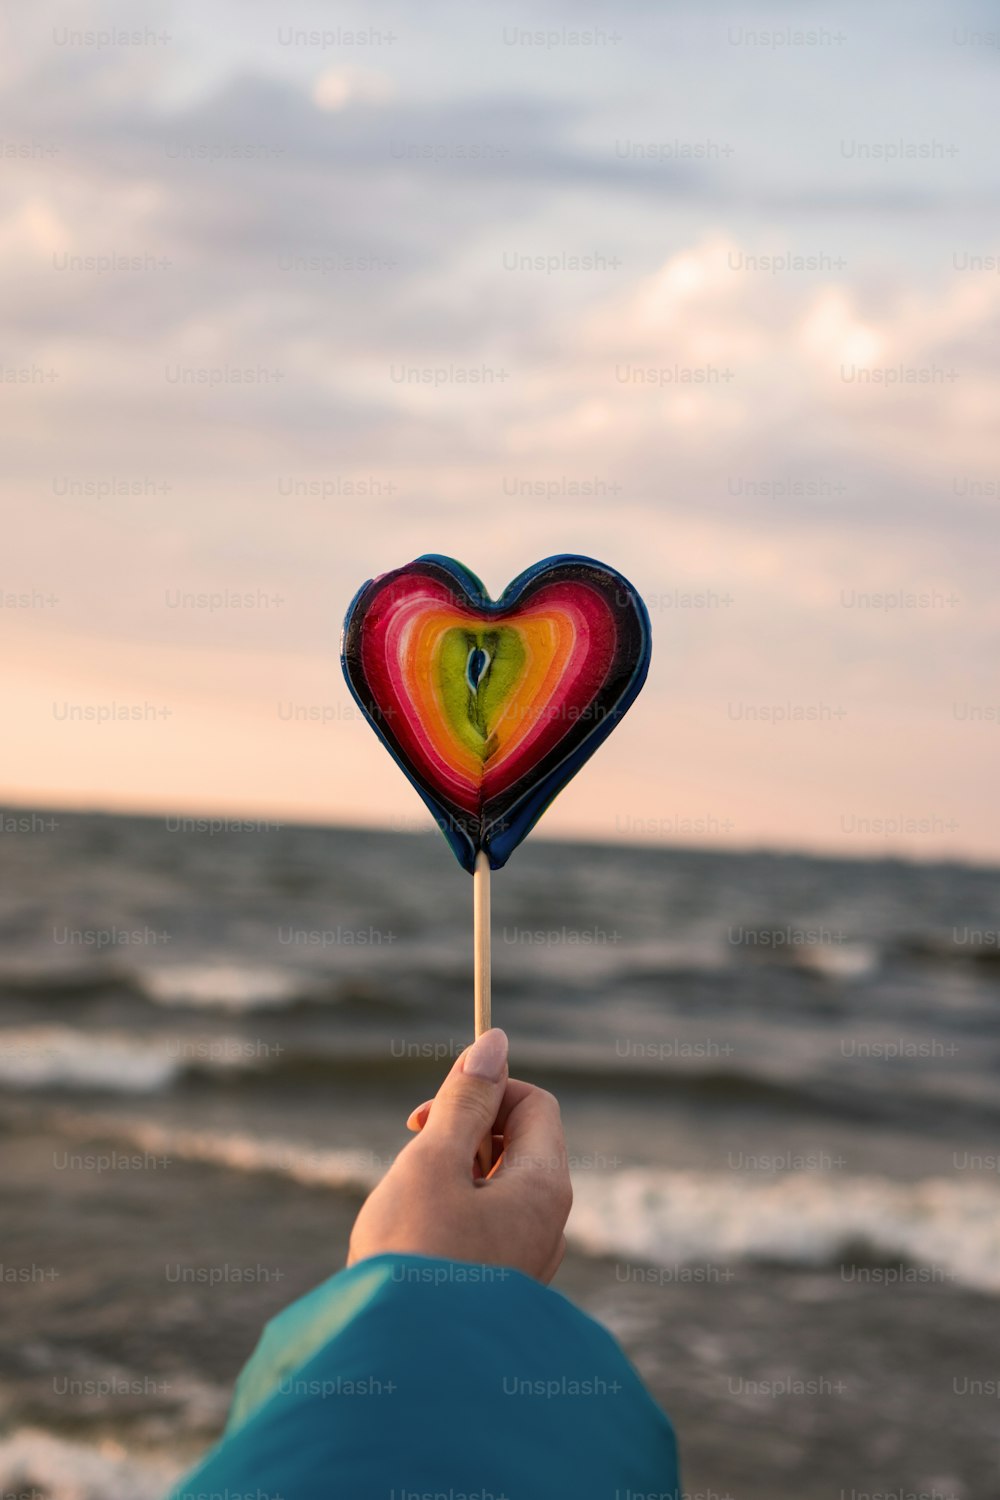 Una persona sosteniendo una piruleta en forma de corazón frente al océano